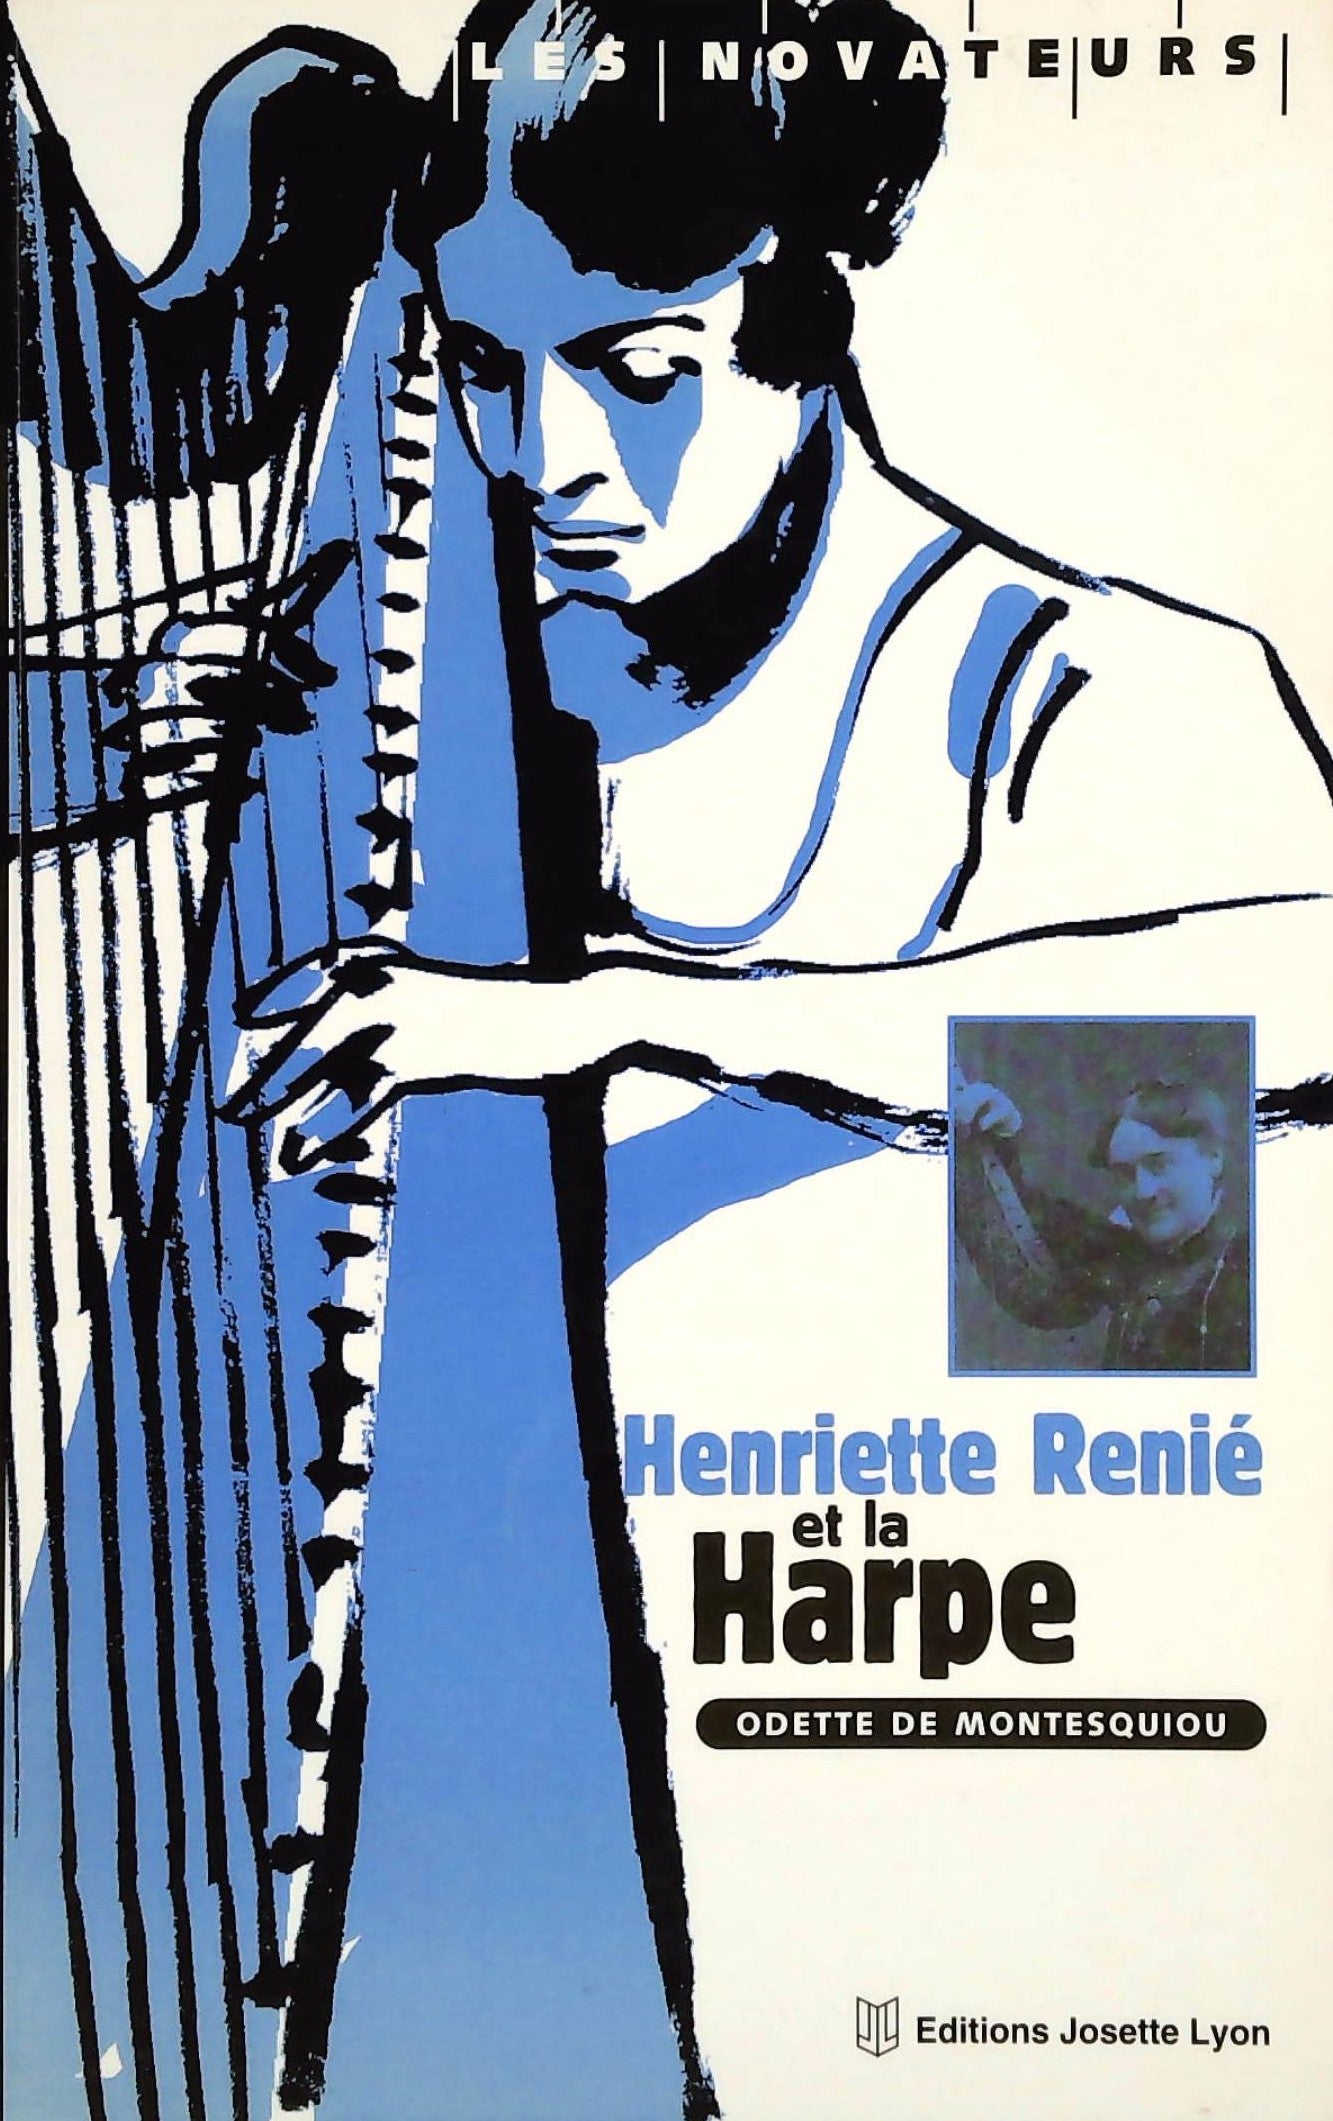 Livre ISBN 2843190045 Les novateurs : Henriette Renié et la harpe (Odette de Montesquiou)